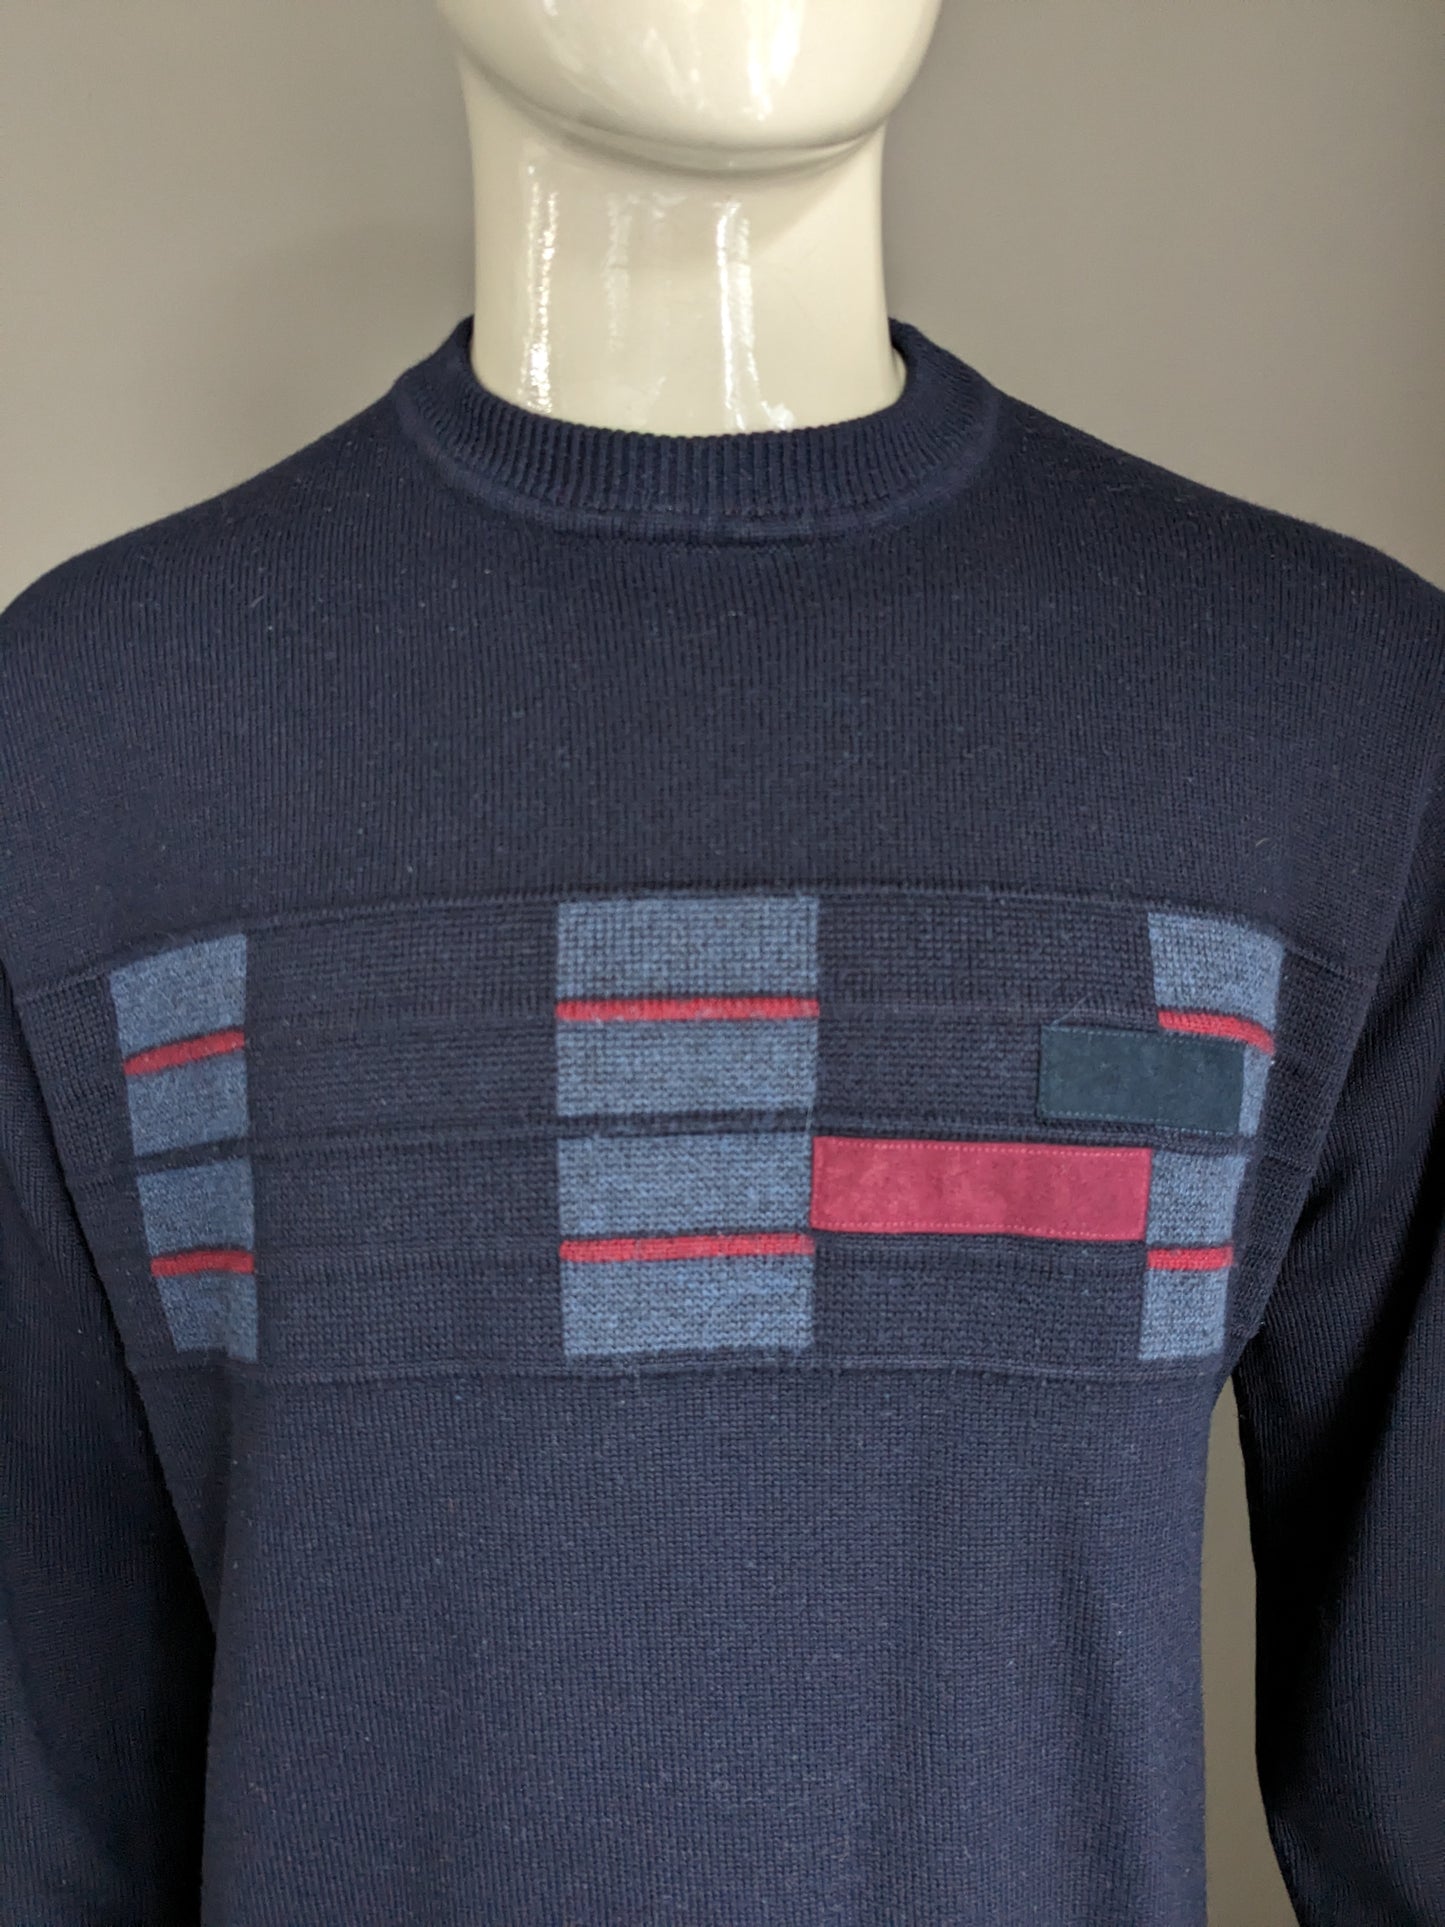 Vintage Bexleys Merino Wollen trui. Donker Blauw Grijs Rood gekleurd. Maat L.